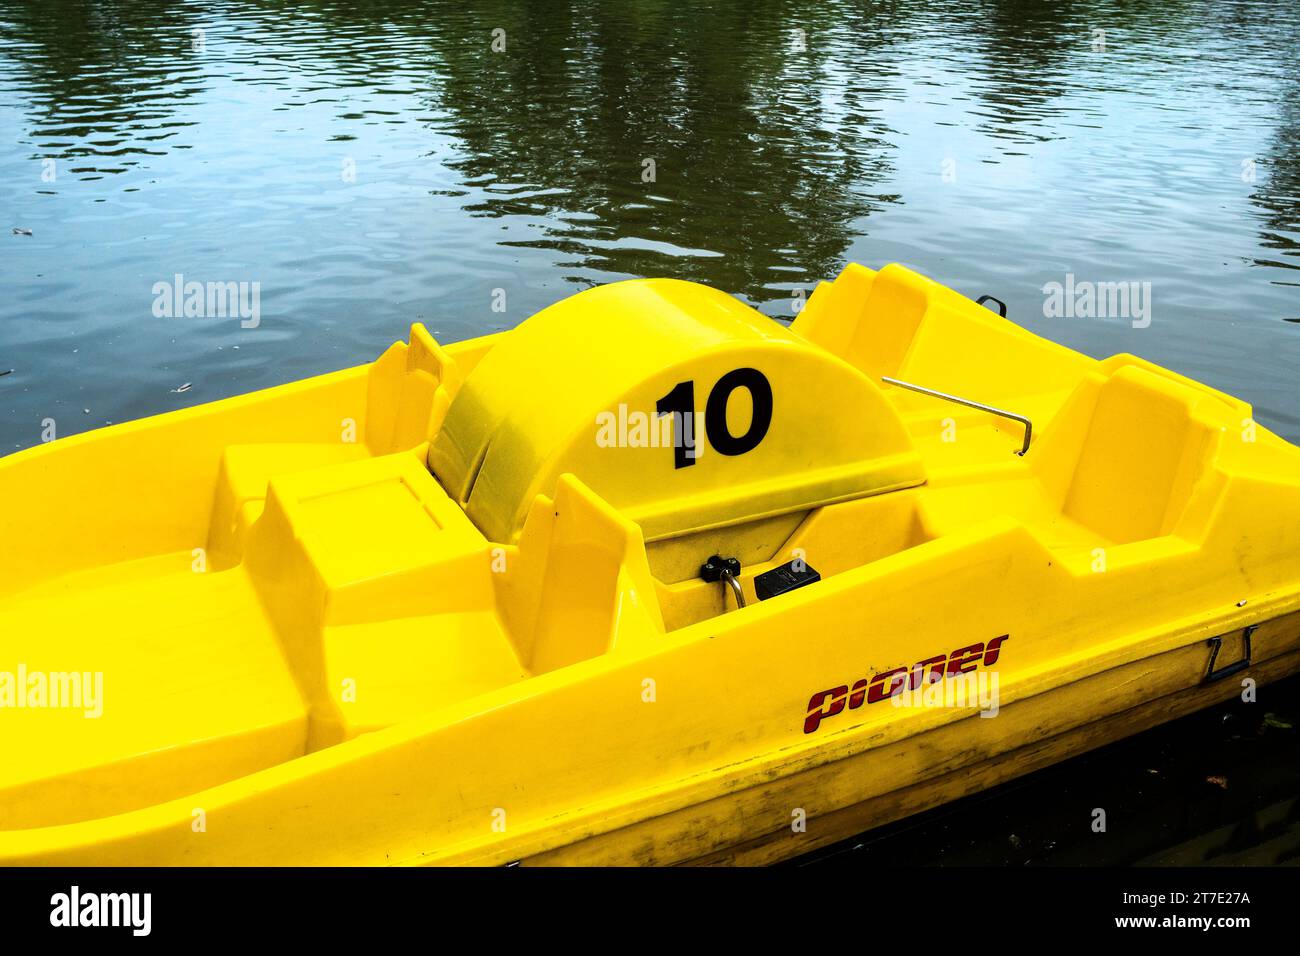 Un pedalò Pioner giallo brillante; oppure noleggia una barca galleggiante sul Trenance Boating Lake a Newquay, in Cornovaglia, nel Regno Unito. Foto Stock